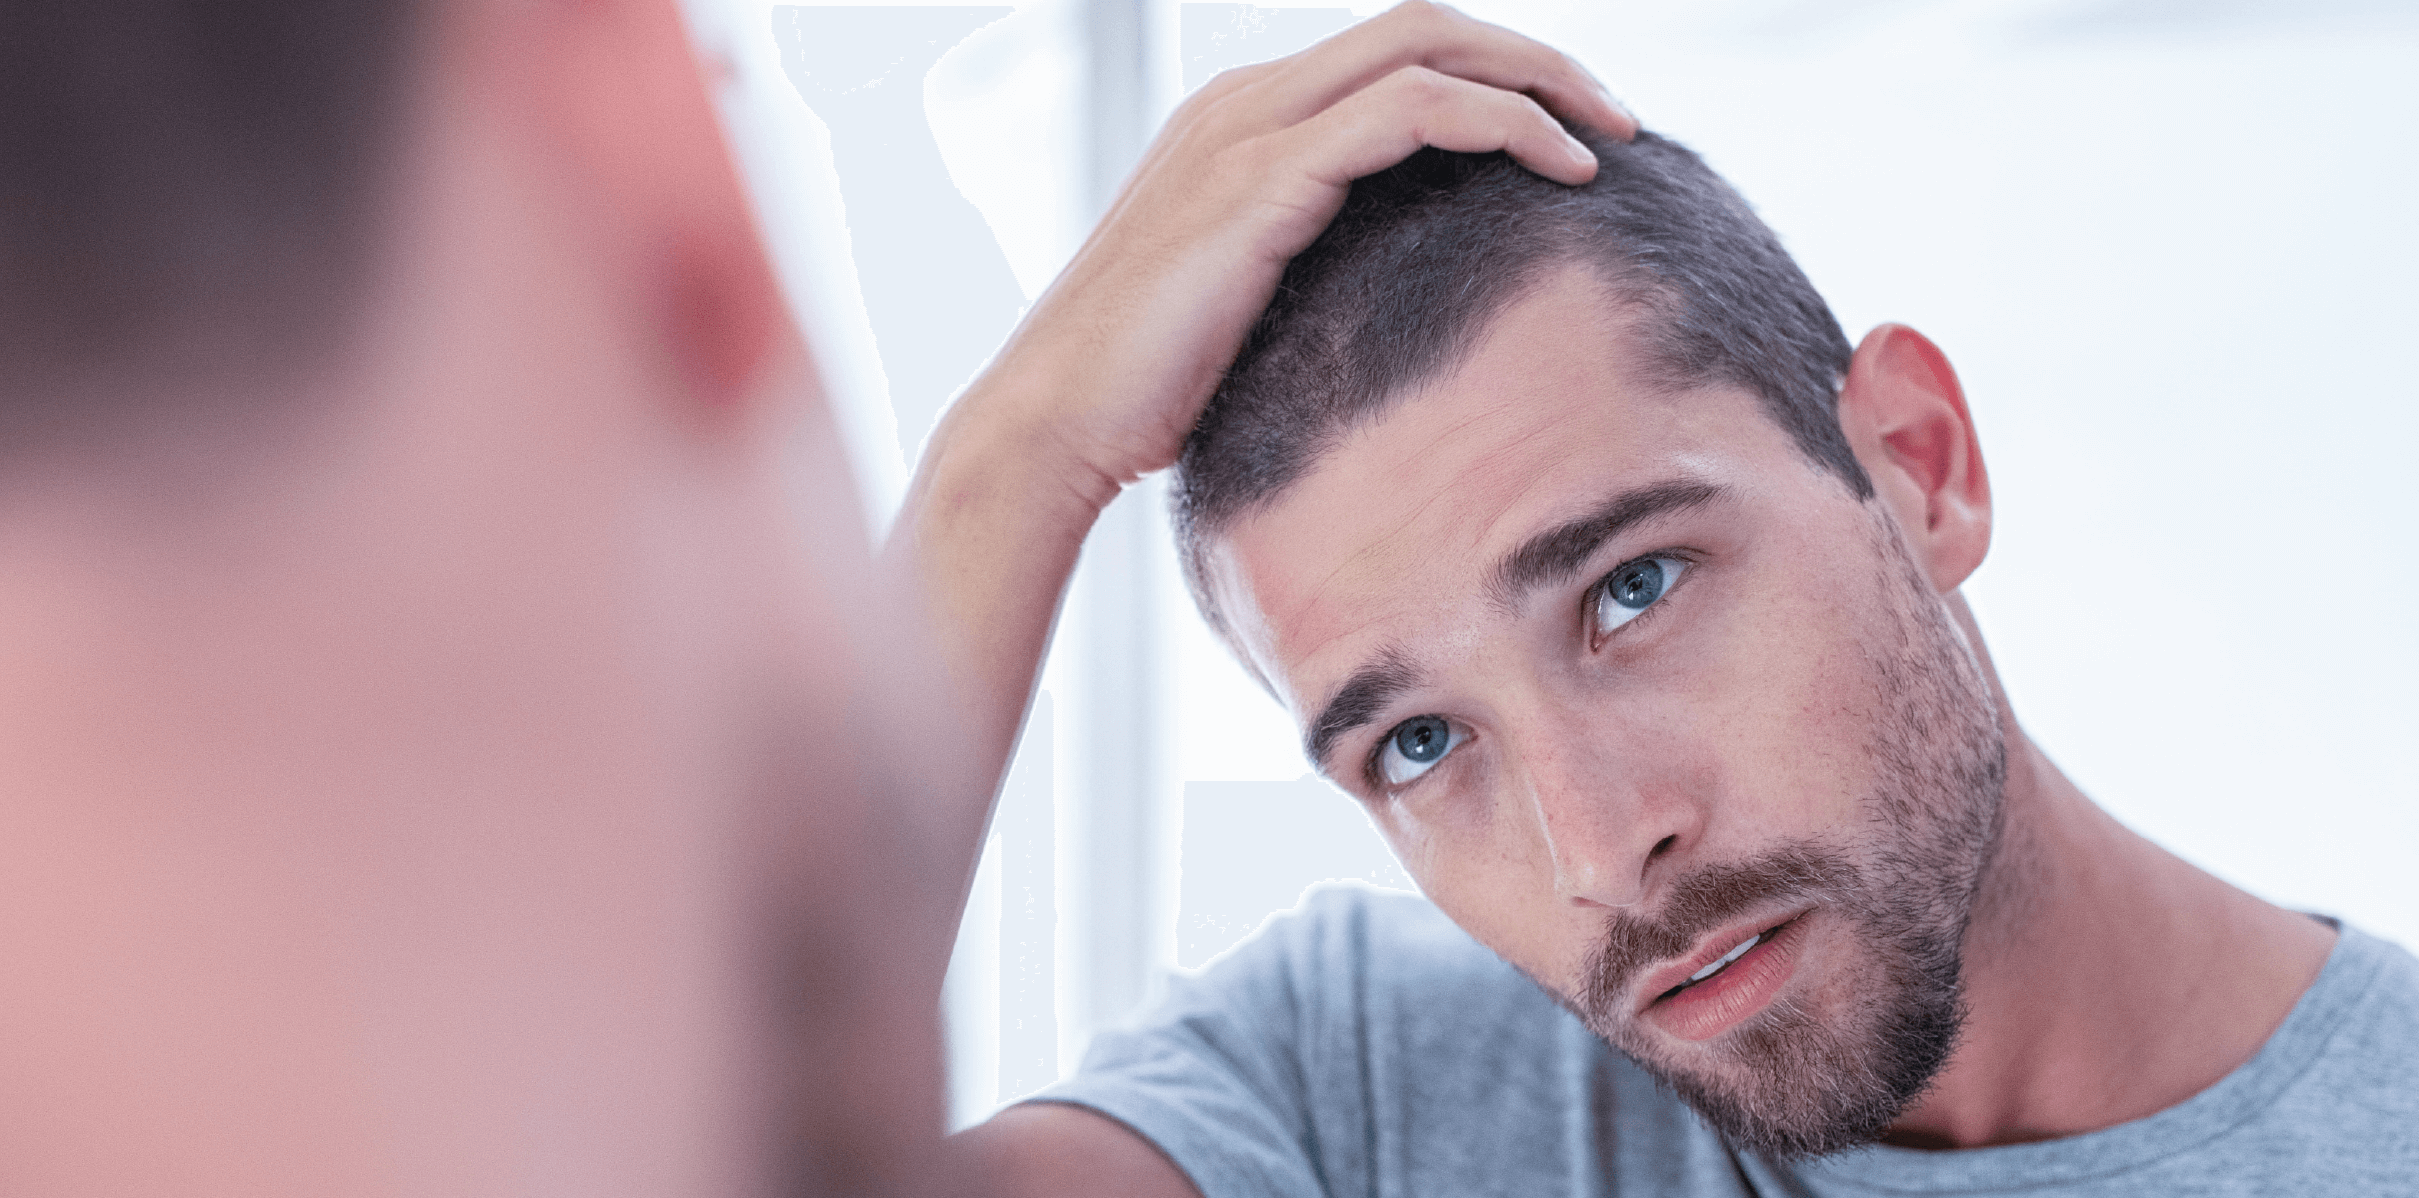 Haarausfall mit 20: Ursachen, Lösungen und wie KÖSMETIK Ihnen helfen kann